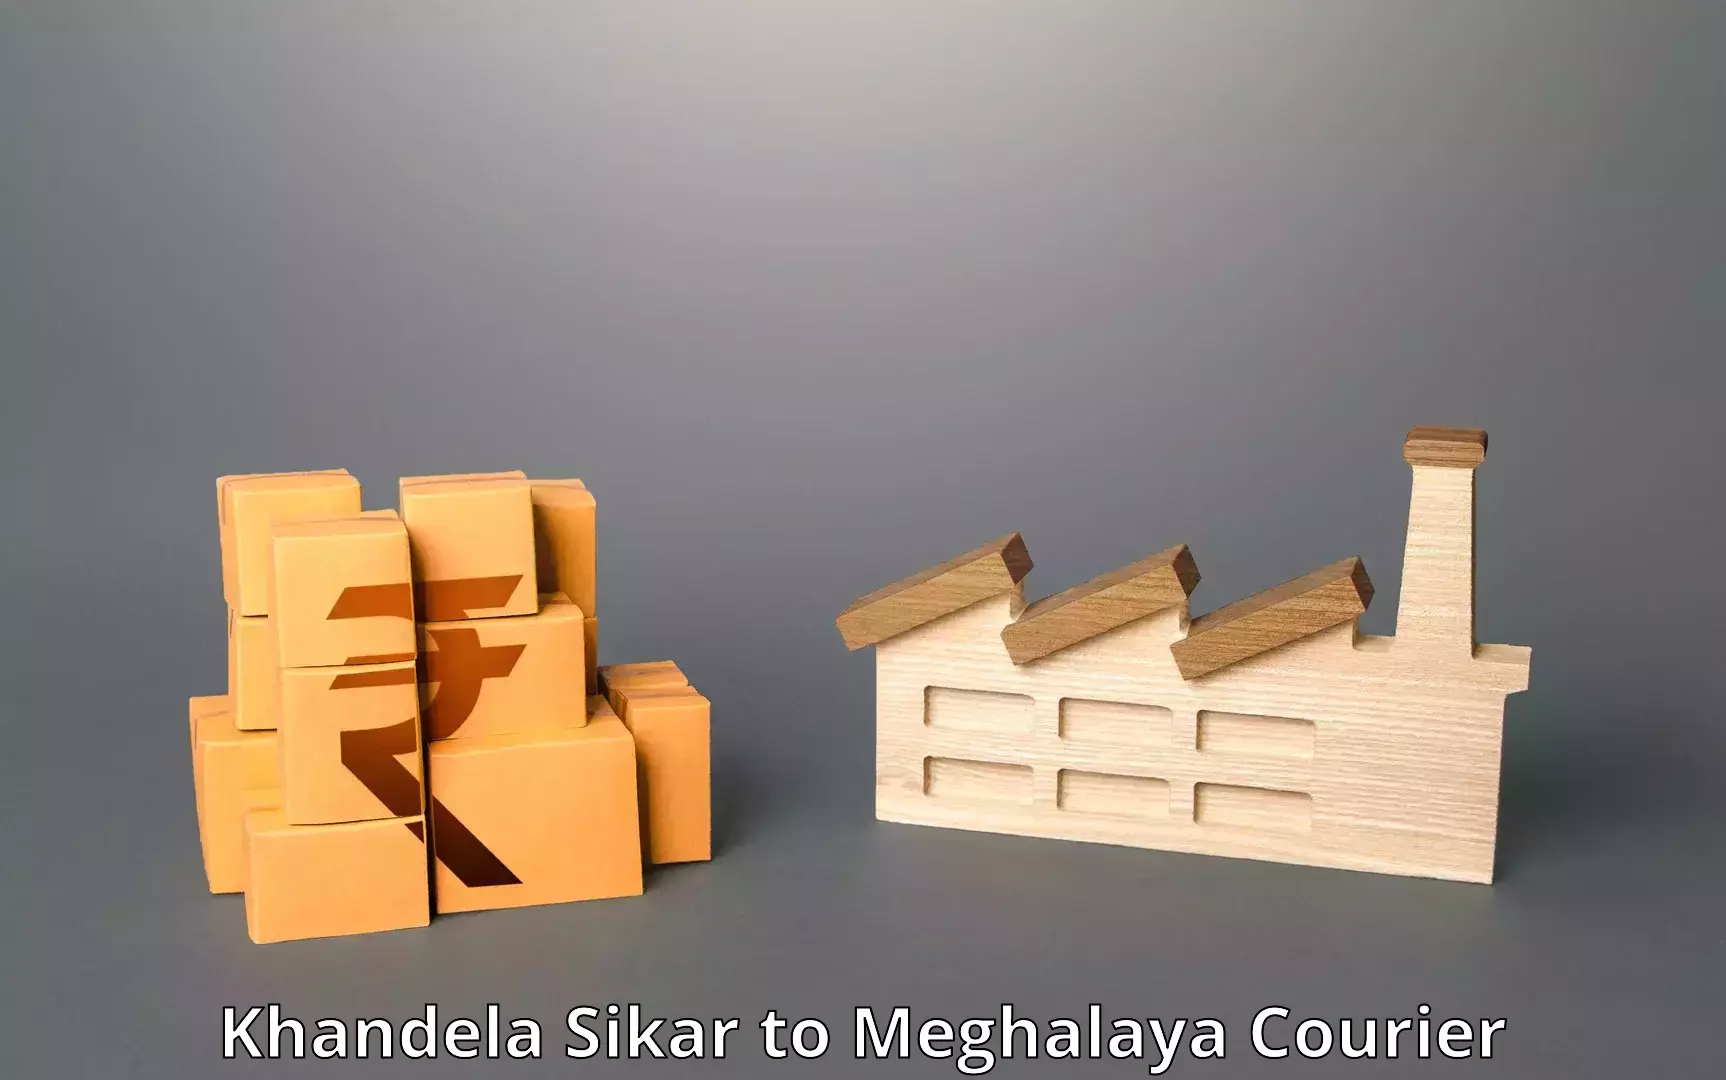 Multi-service courier options Khandela Sikar to Nongstoin